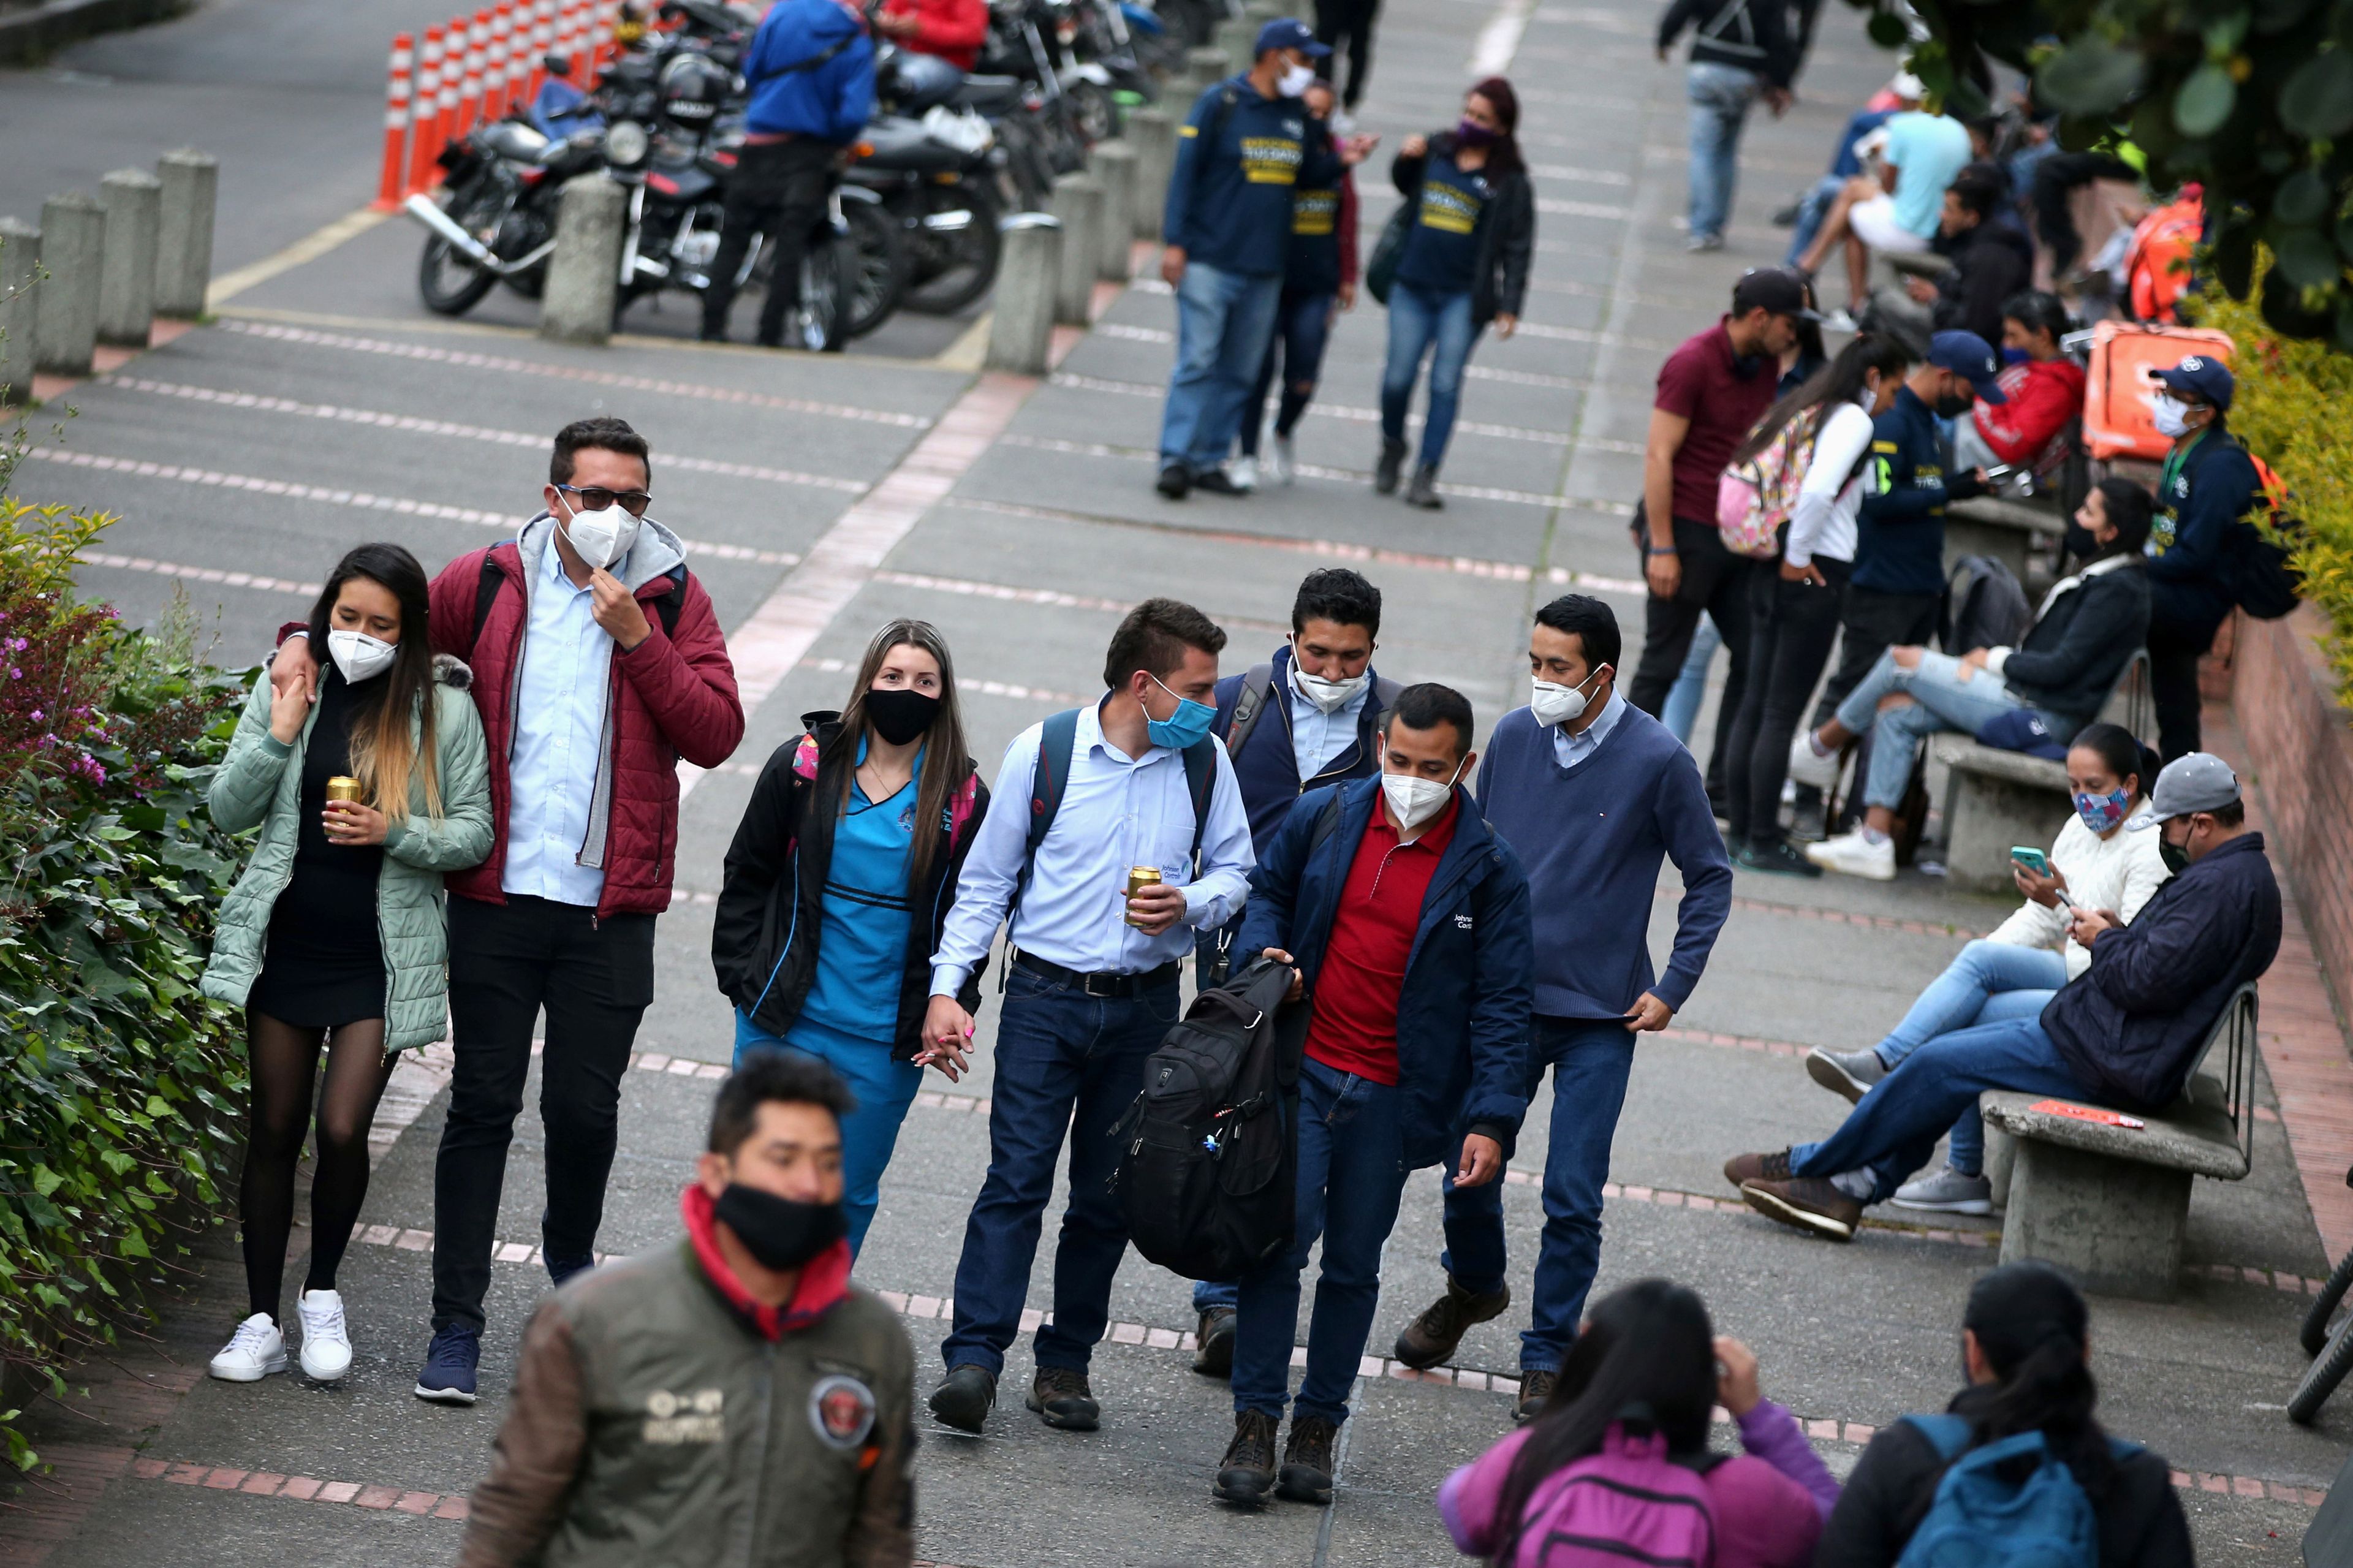 Grupos de jóvenes pasean durante la pandemia